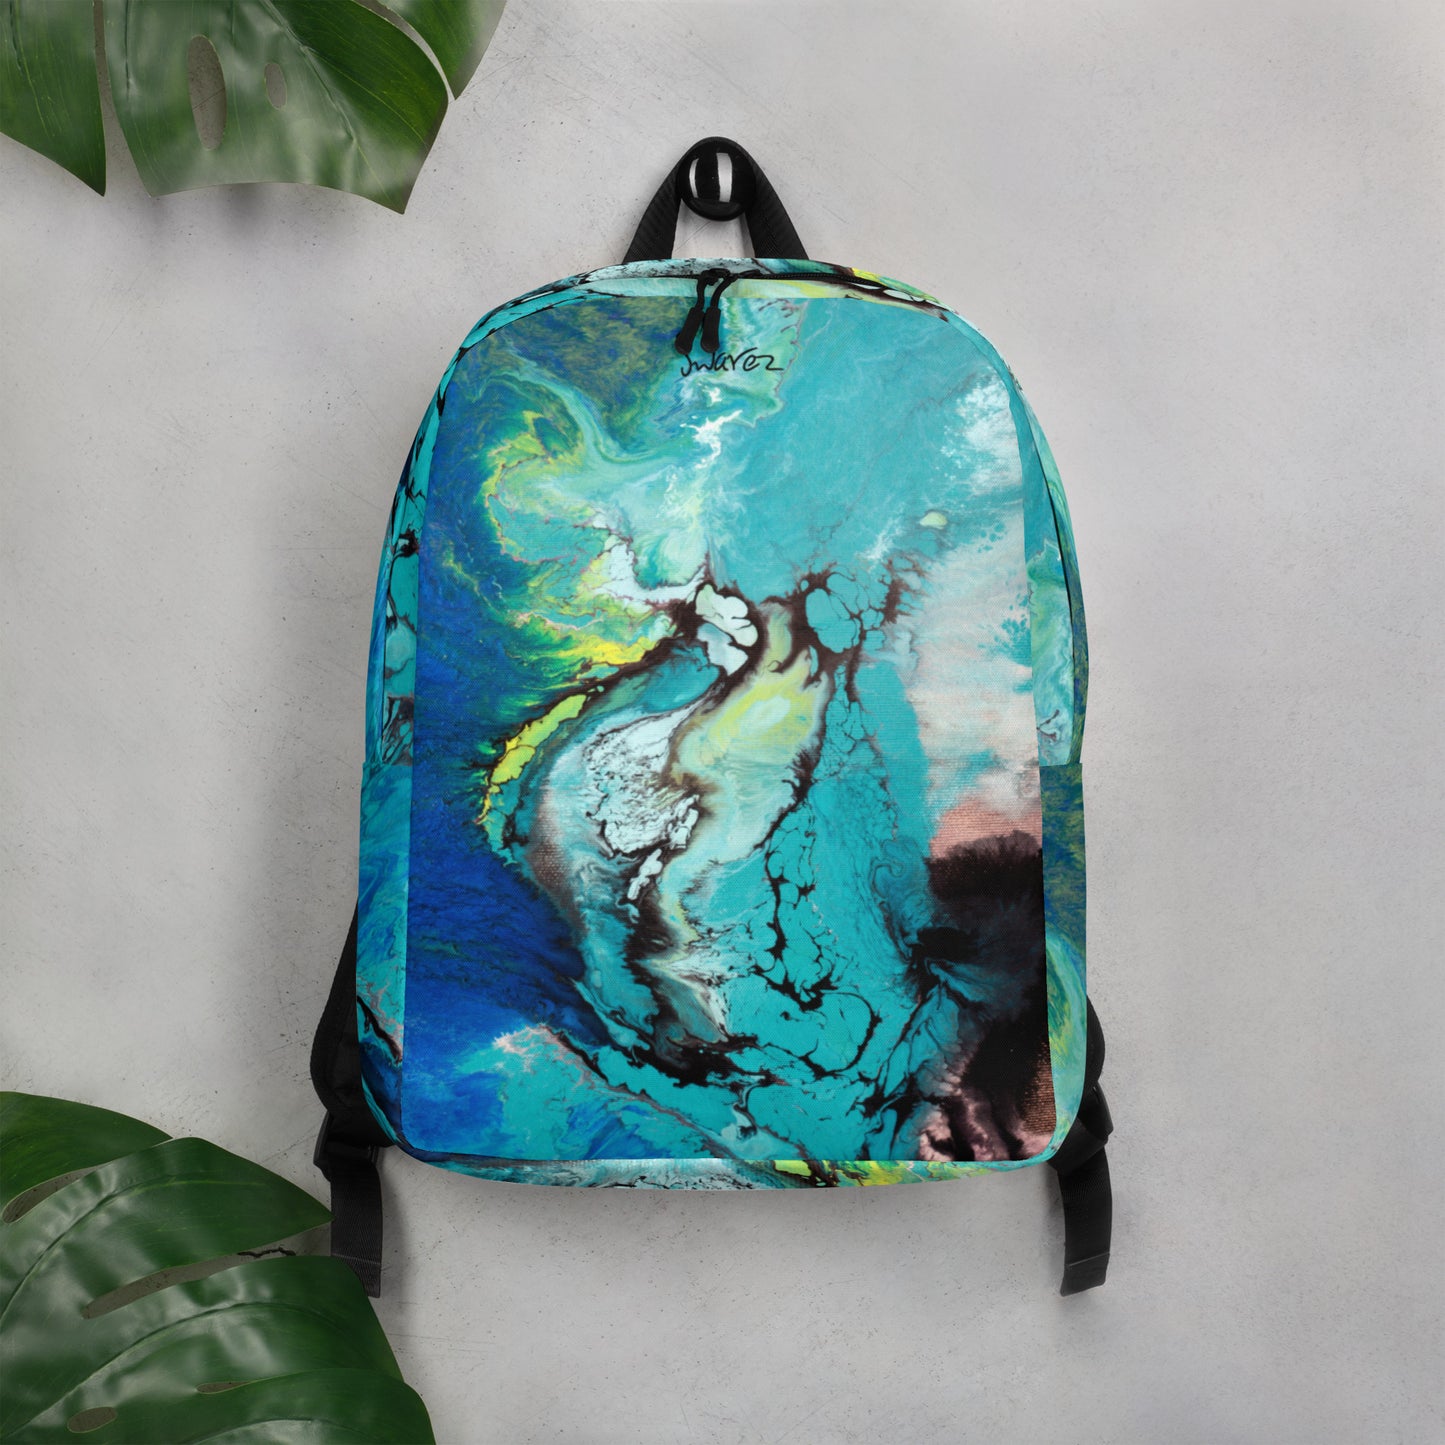 Minimalist Backpack - Deep Blue design